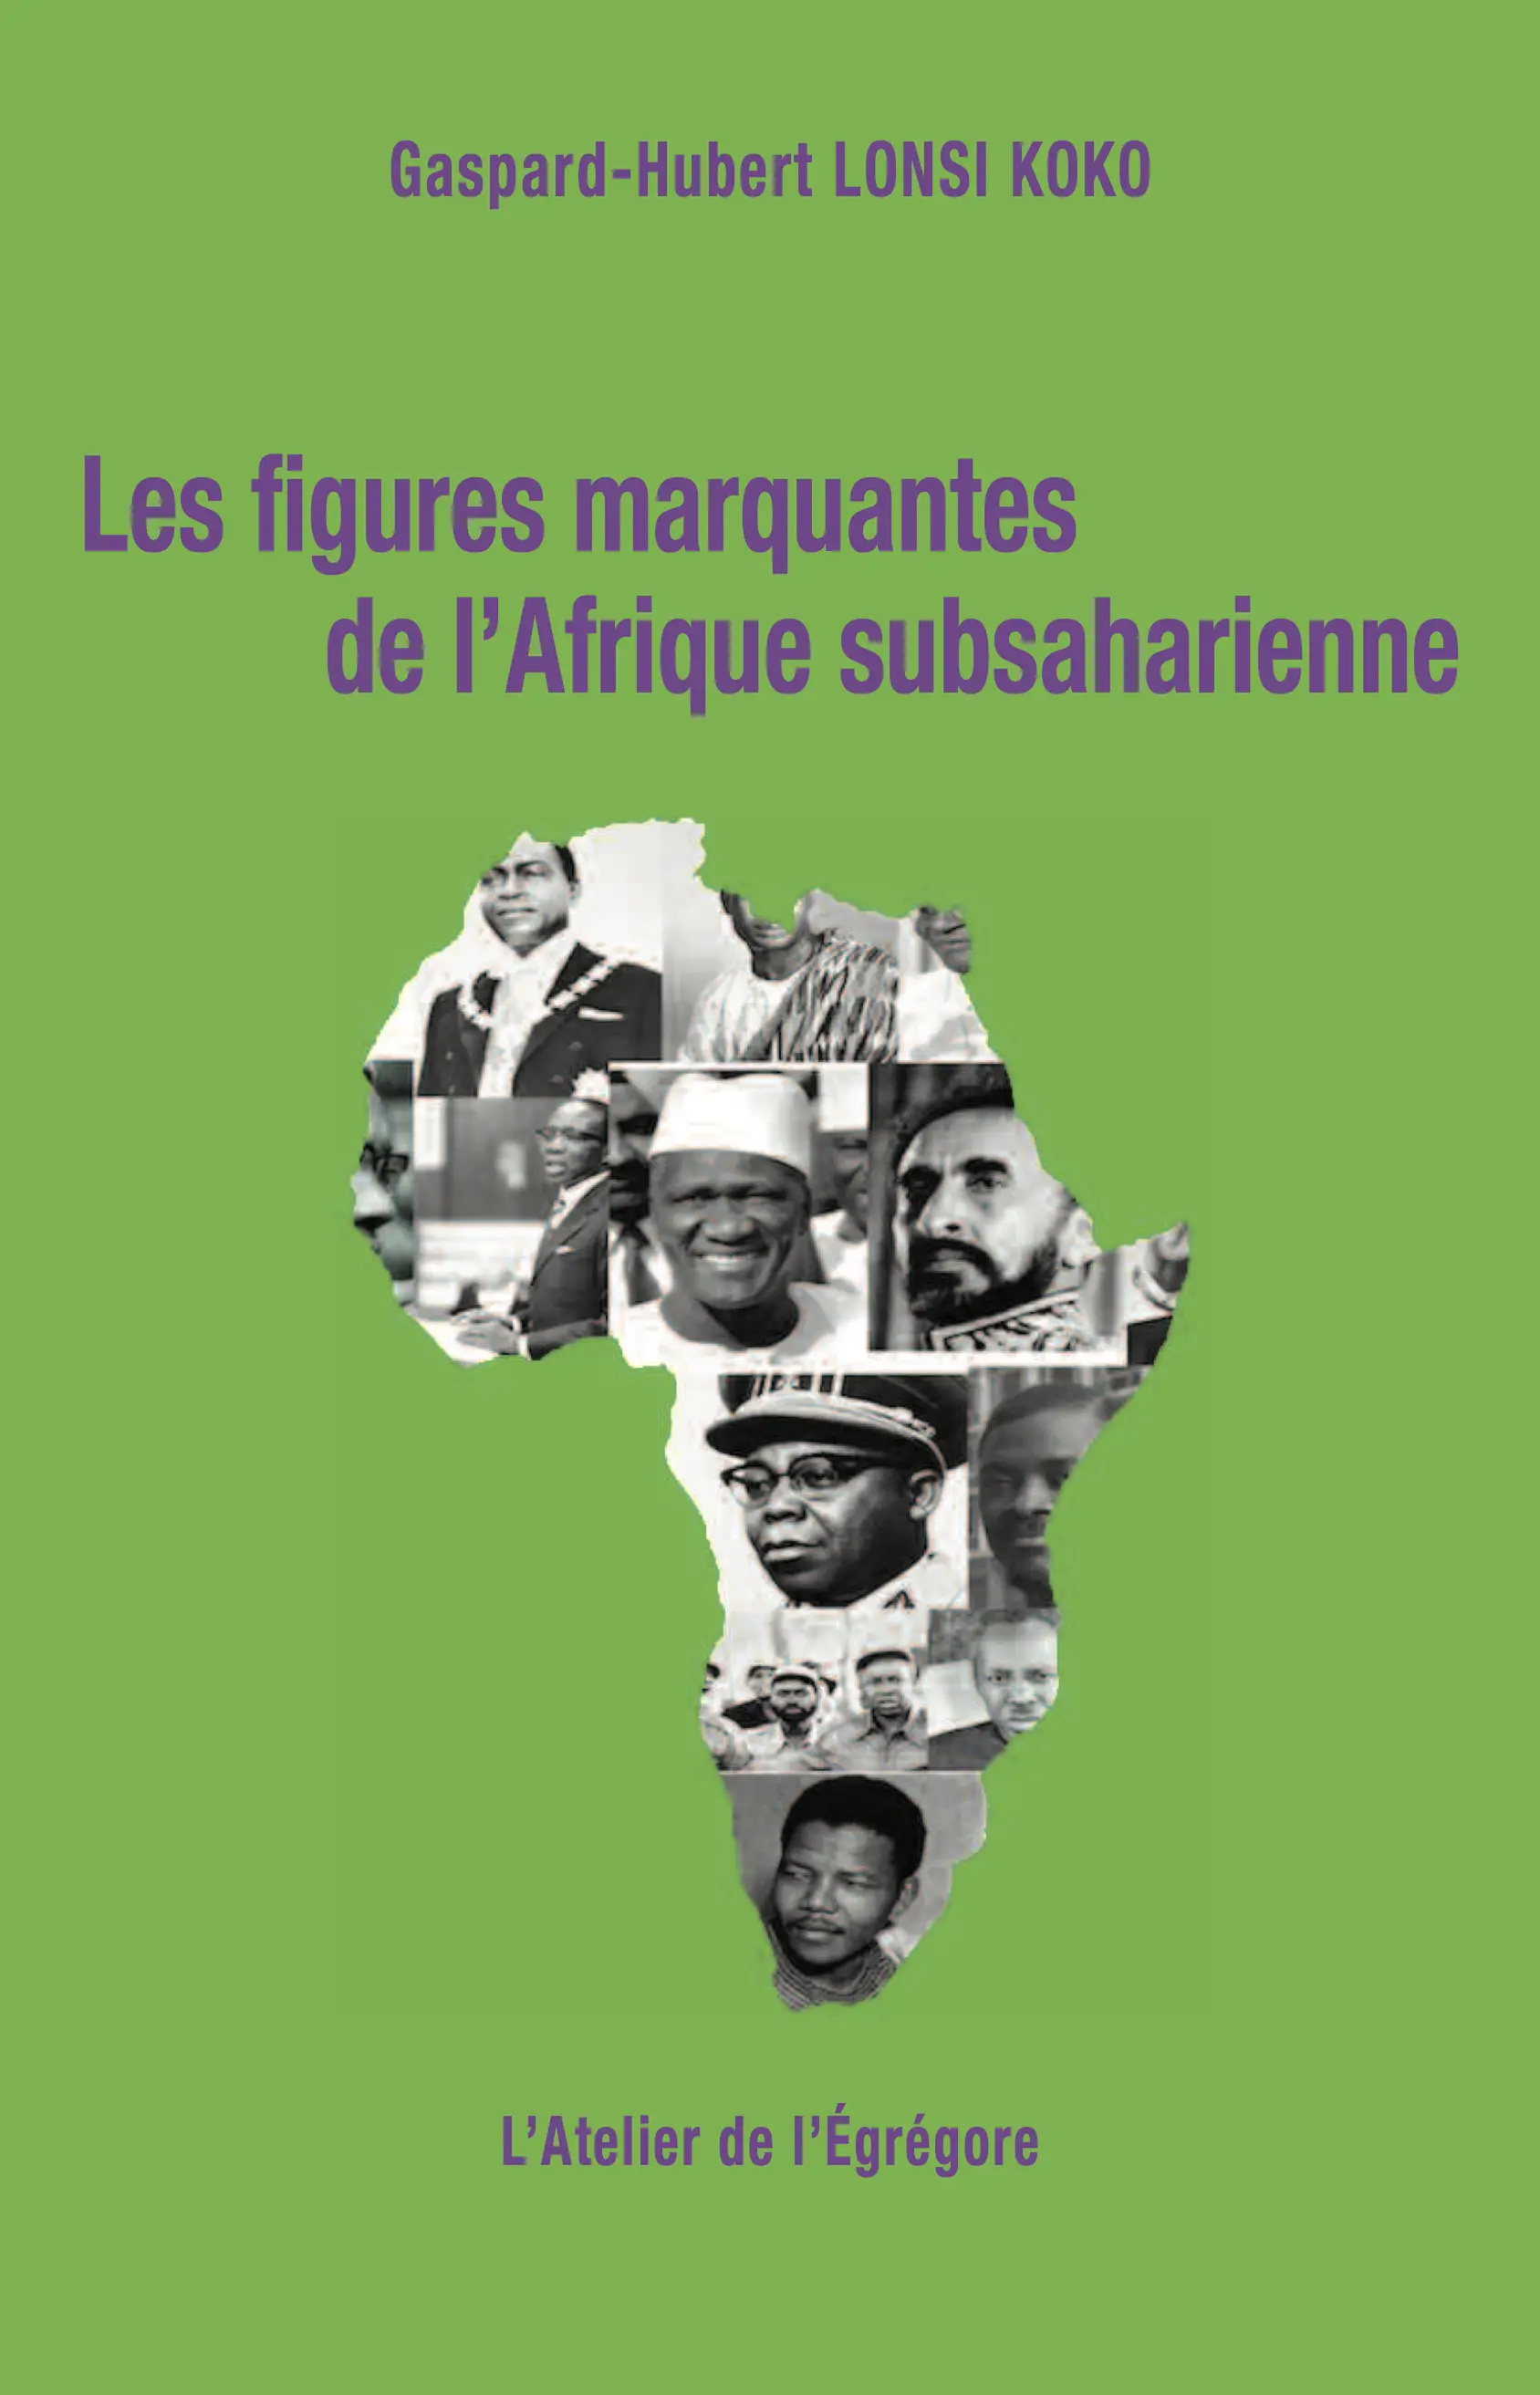 Les figures marquantes de l'Afrique subsaharienne